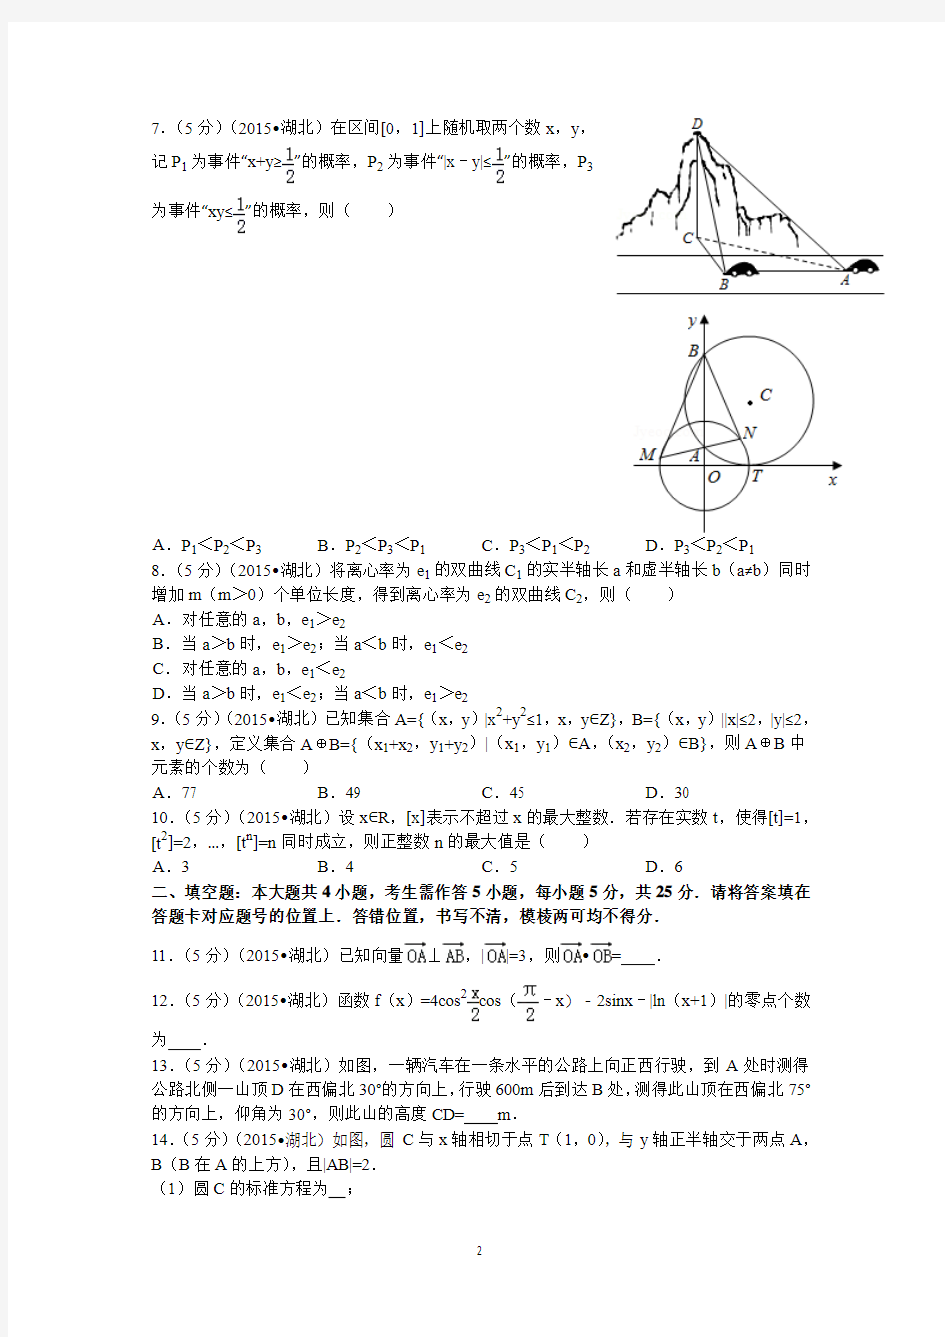 2015年湖北省高考数学试卷(理科)答案与解读